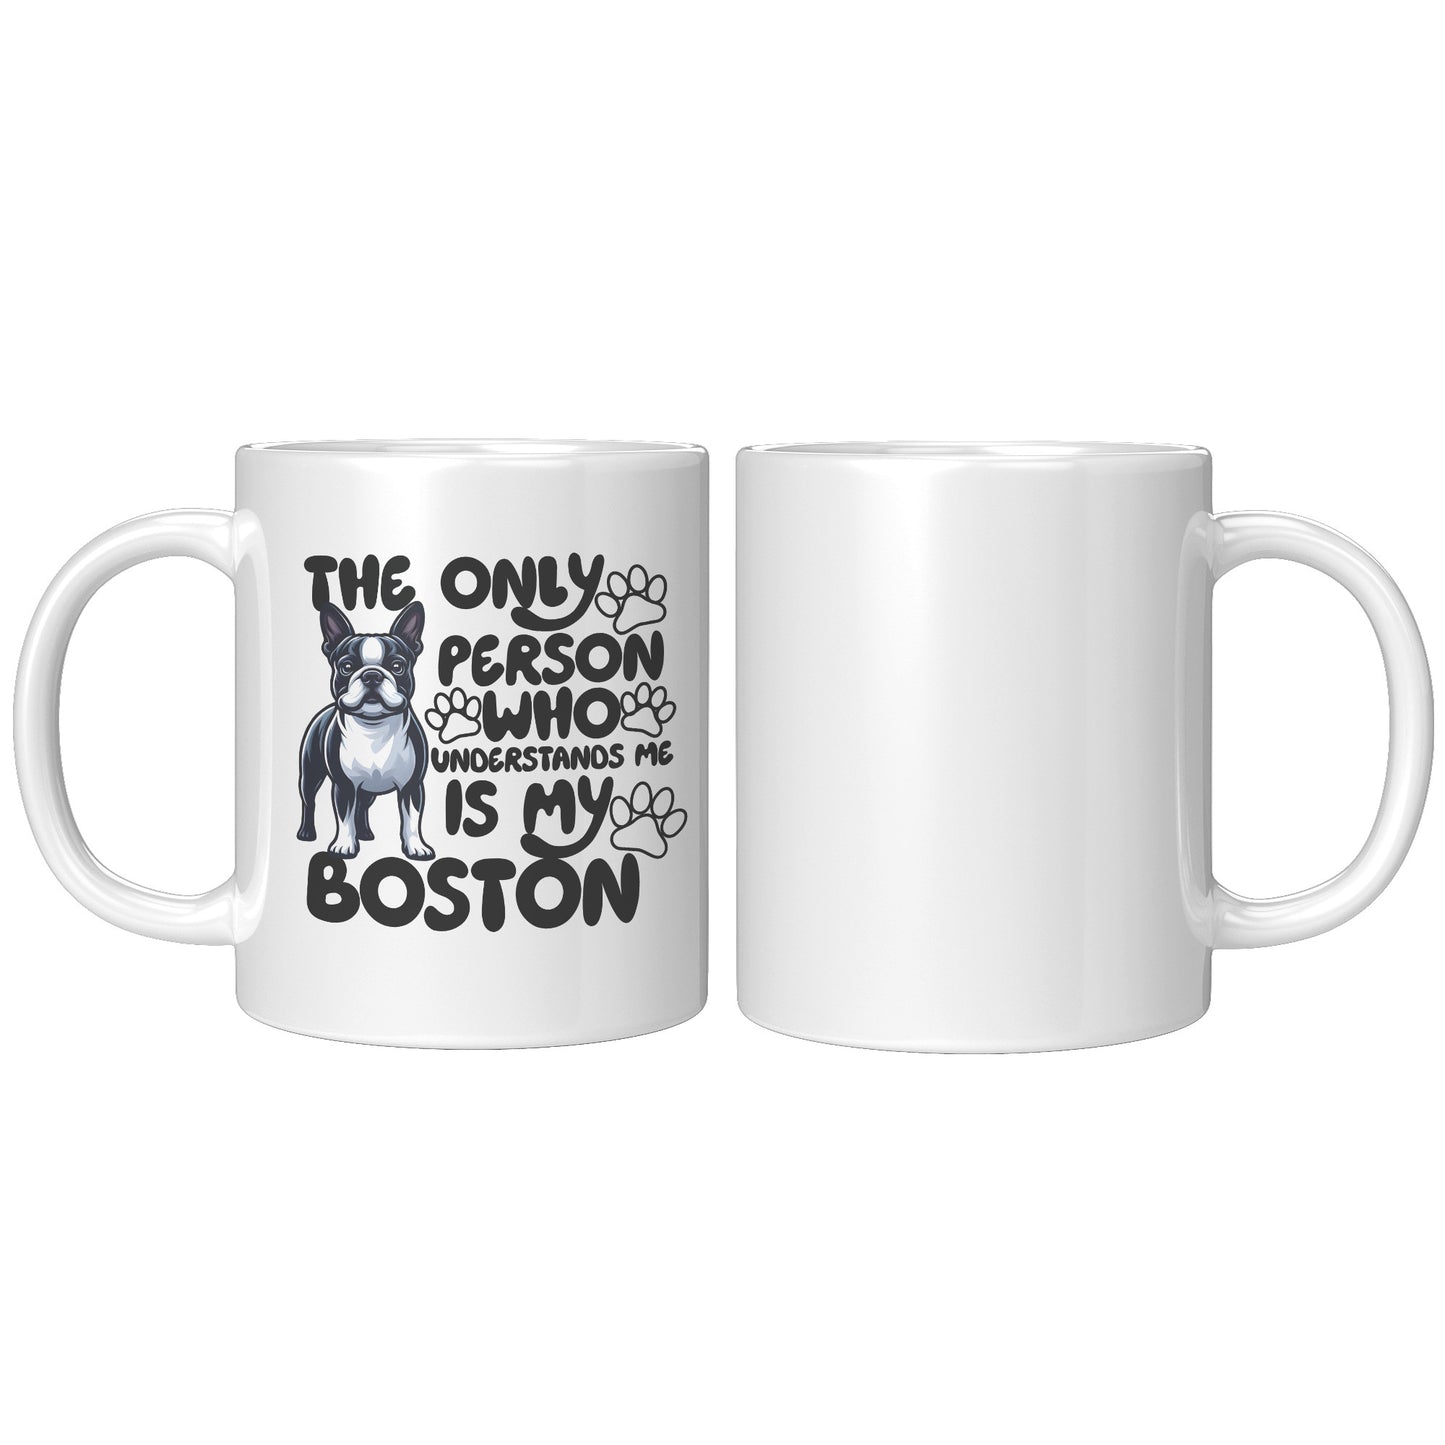 Zebra-Mug for Boston Terrier lovers